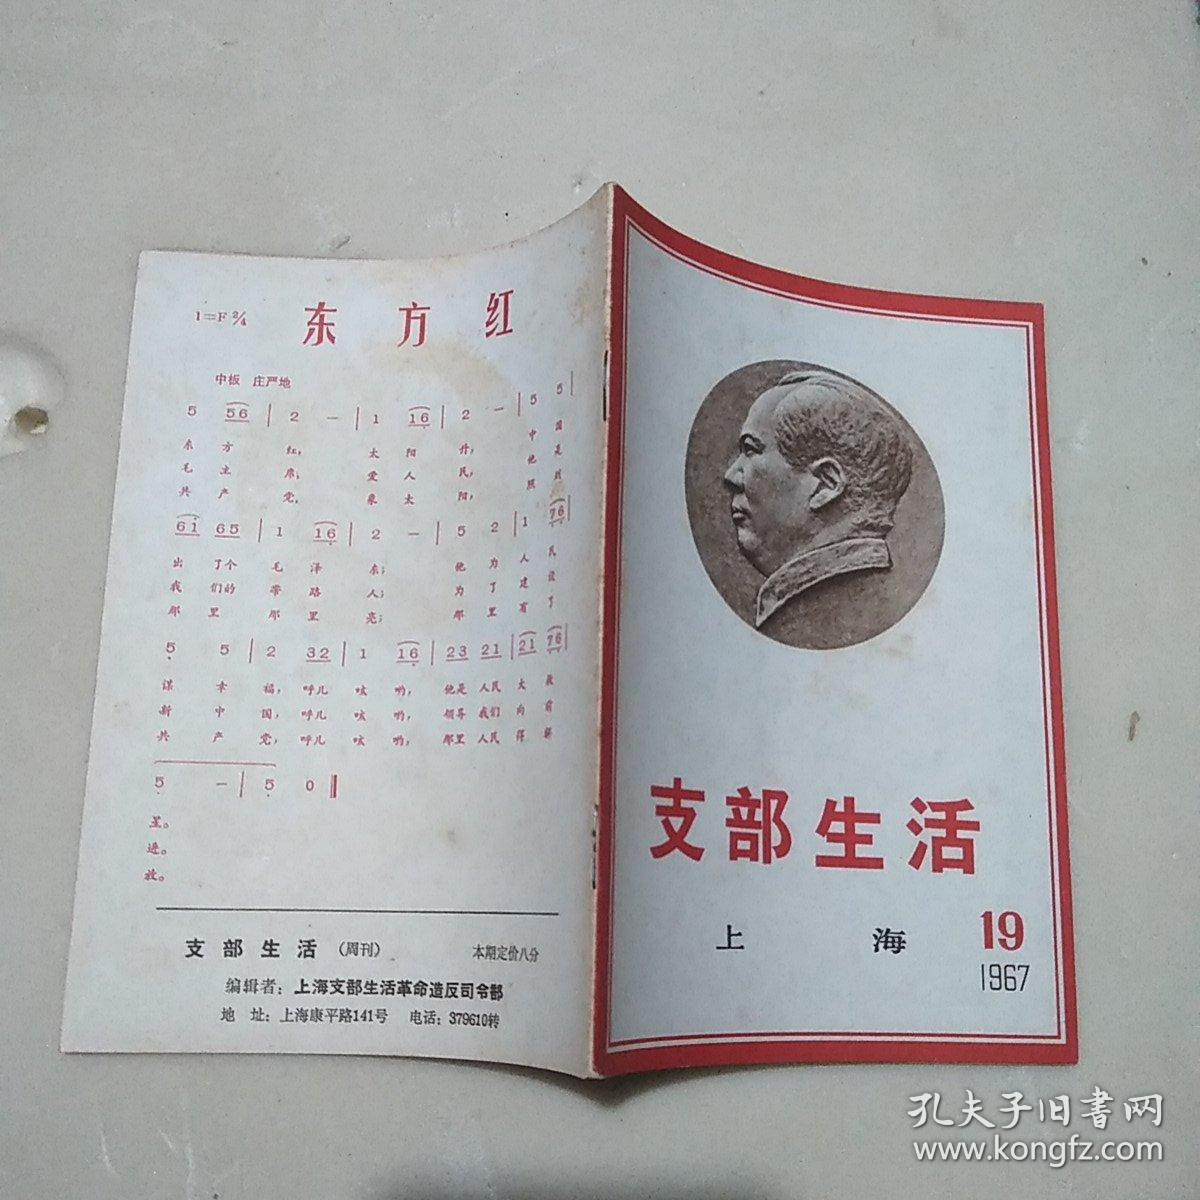 上海《支部生活》1967年第19期 品相如图